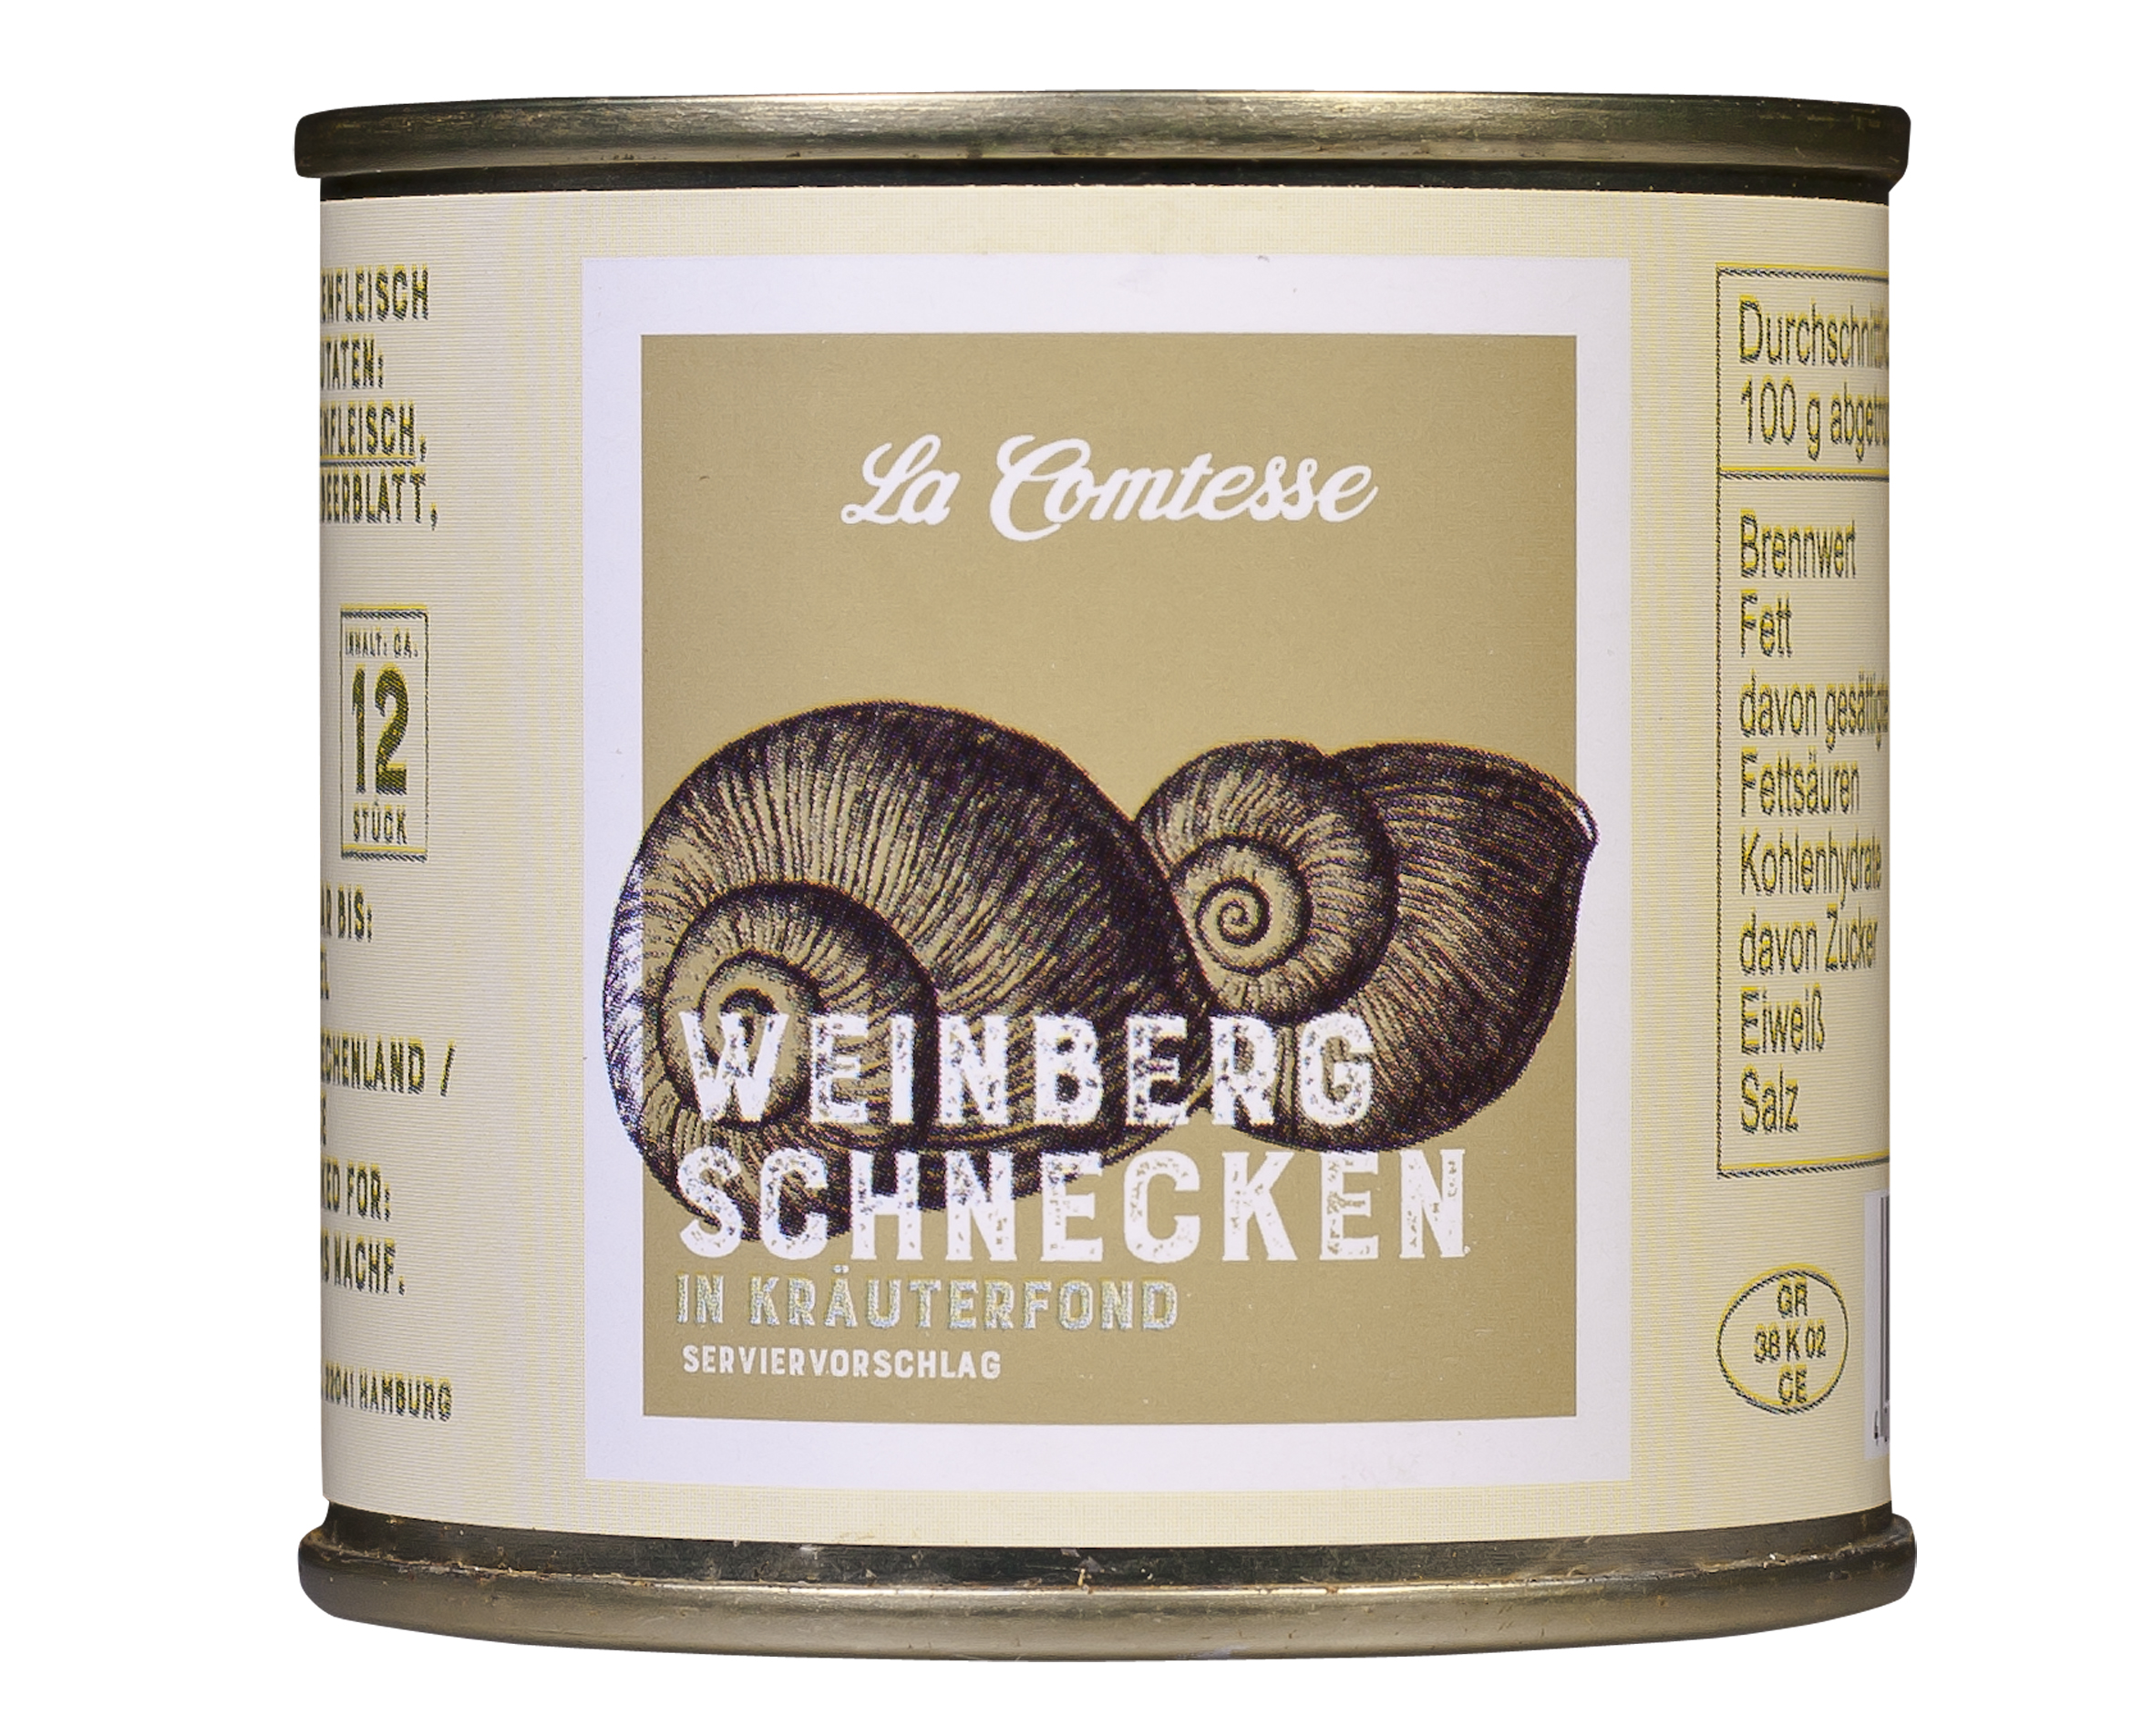 Weinberg-Schnecken, ca. 1 Dtzd. je Dose im Kräuterfond, 100 g